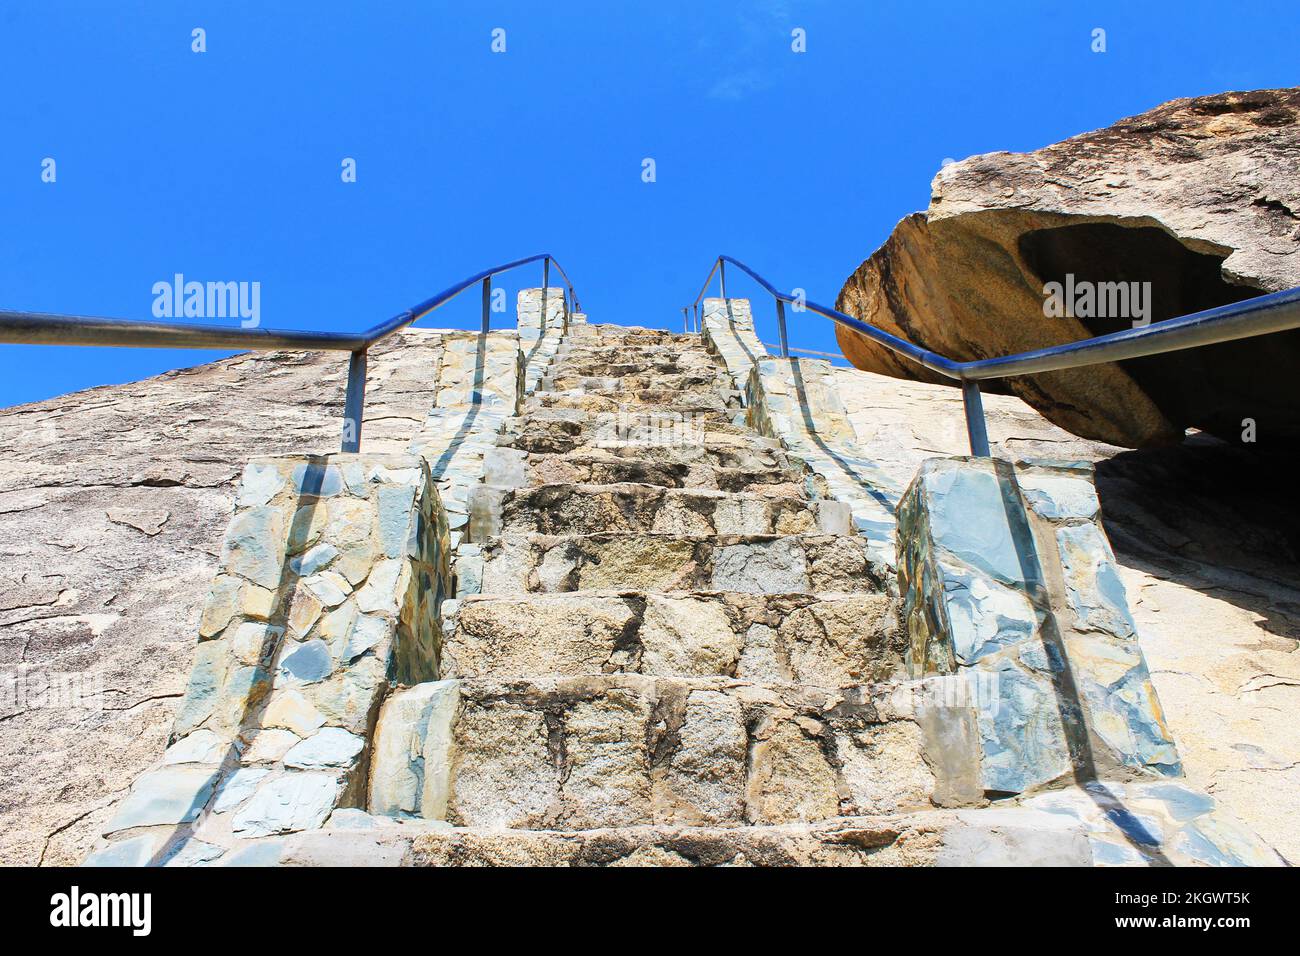 Un escalier en pierre sculpté dans une grande formation rocheuse, formation rocheuse Casibari, Aruba Banque D'Images